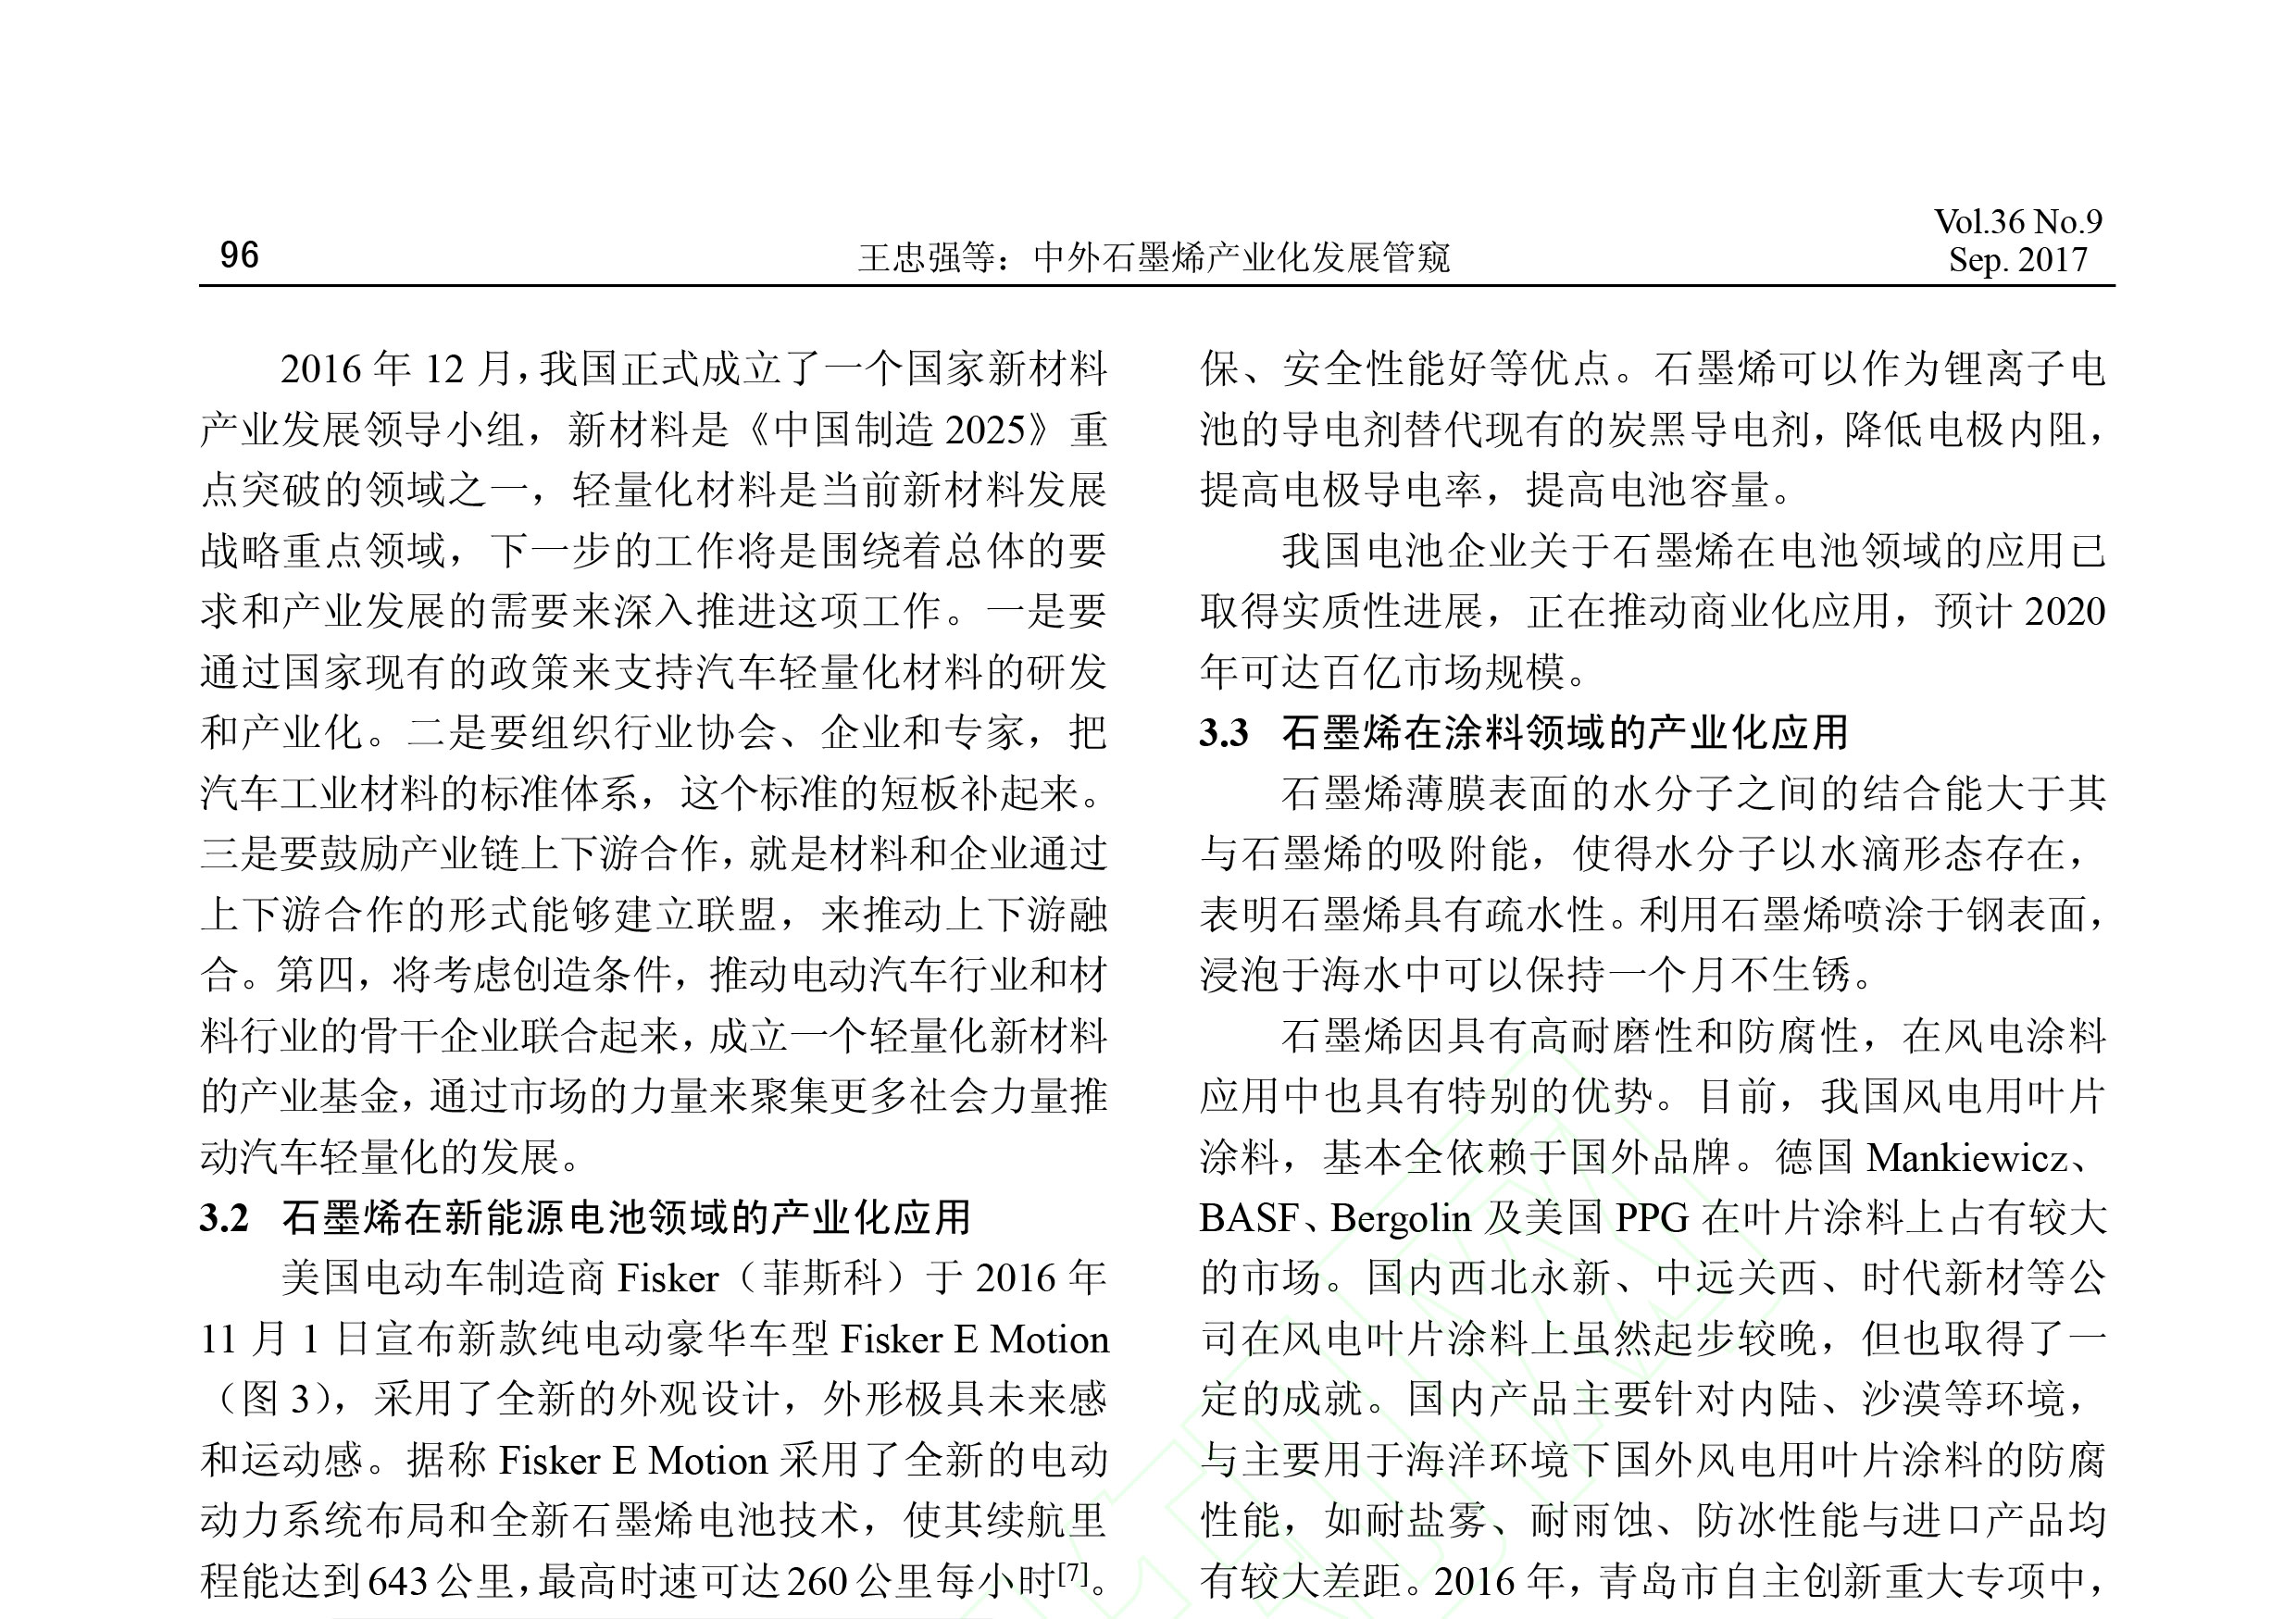 《电子元件与材料》刊发了青岛德通纳米技术有限公司员工撰写的《中国石墨烯产业化发展管窥》一文